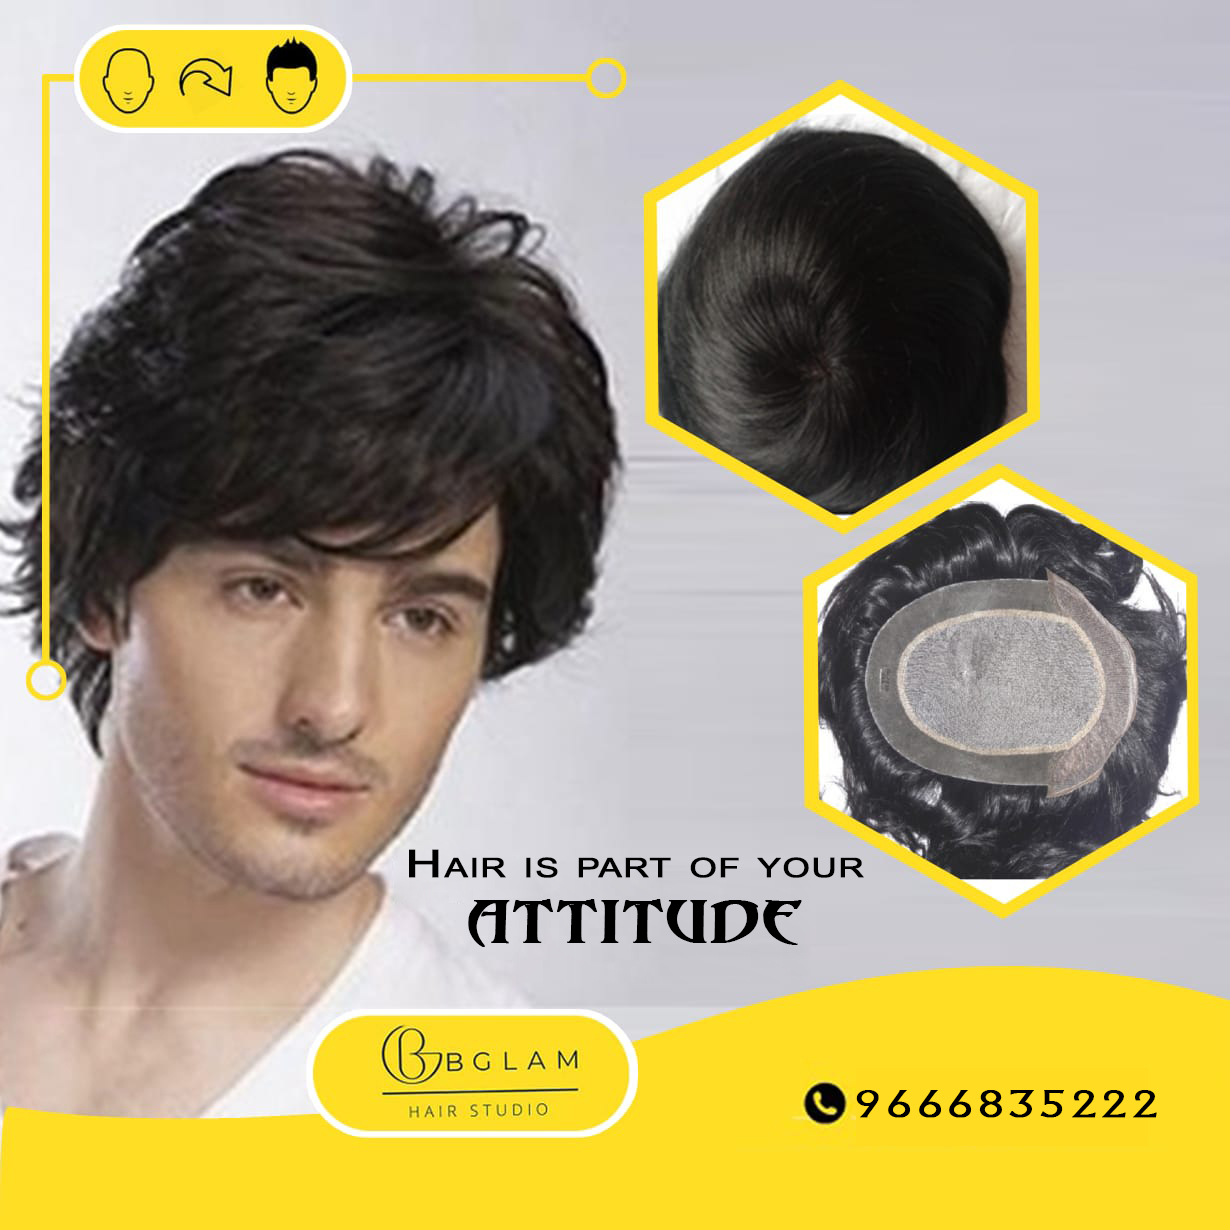 Hair Patch Services in Hyderabad by Bglamhairstudio on DeviantArt